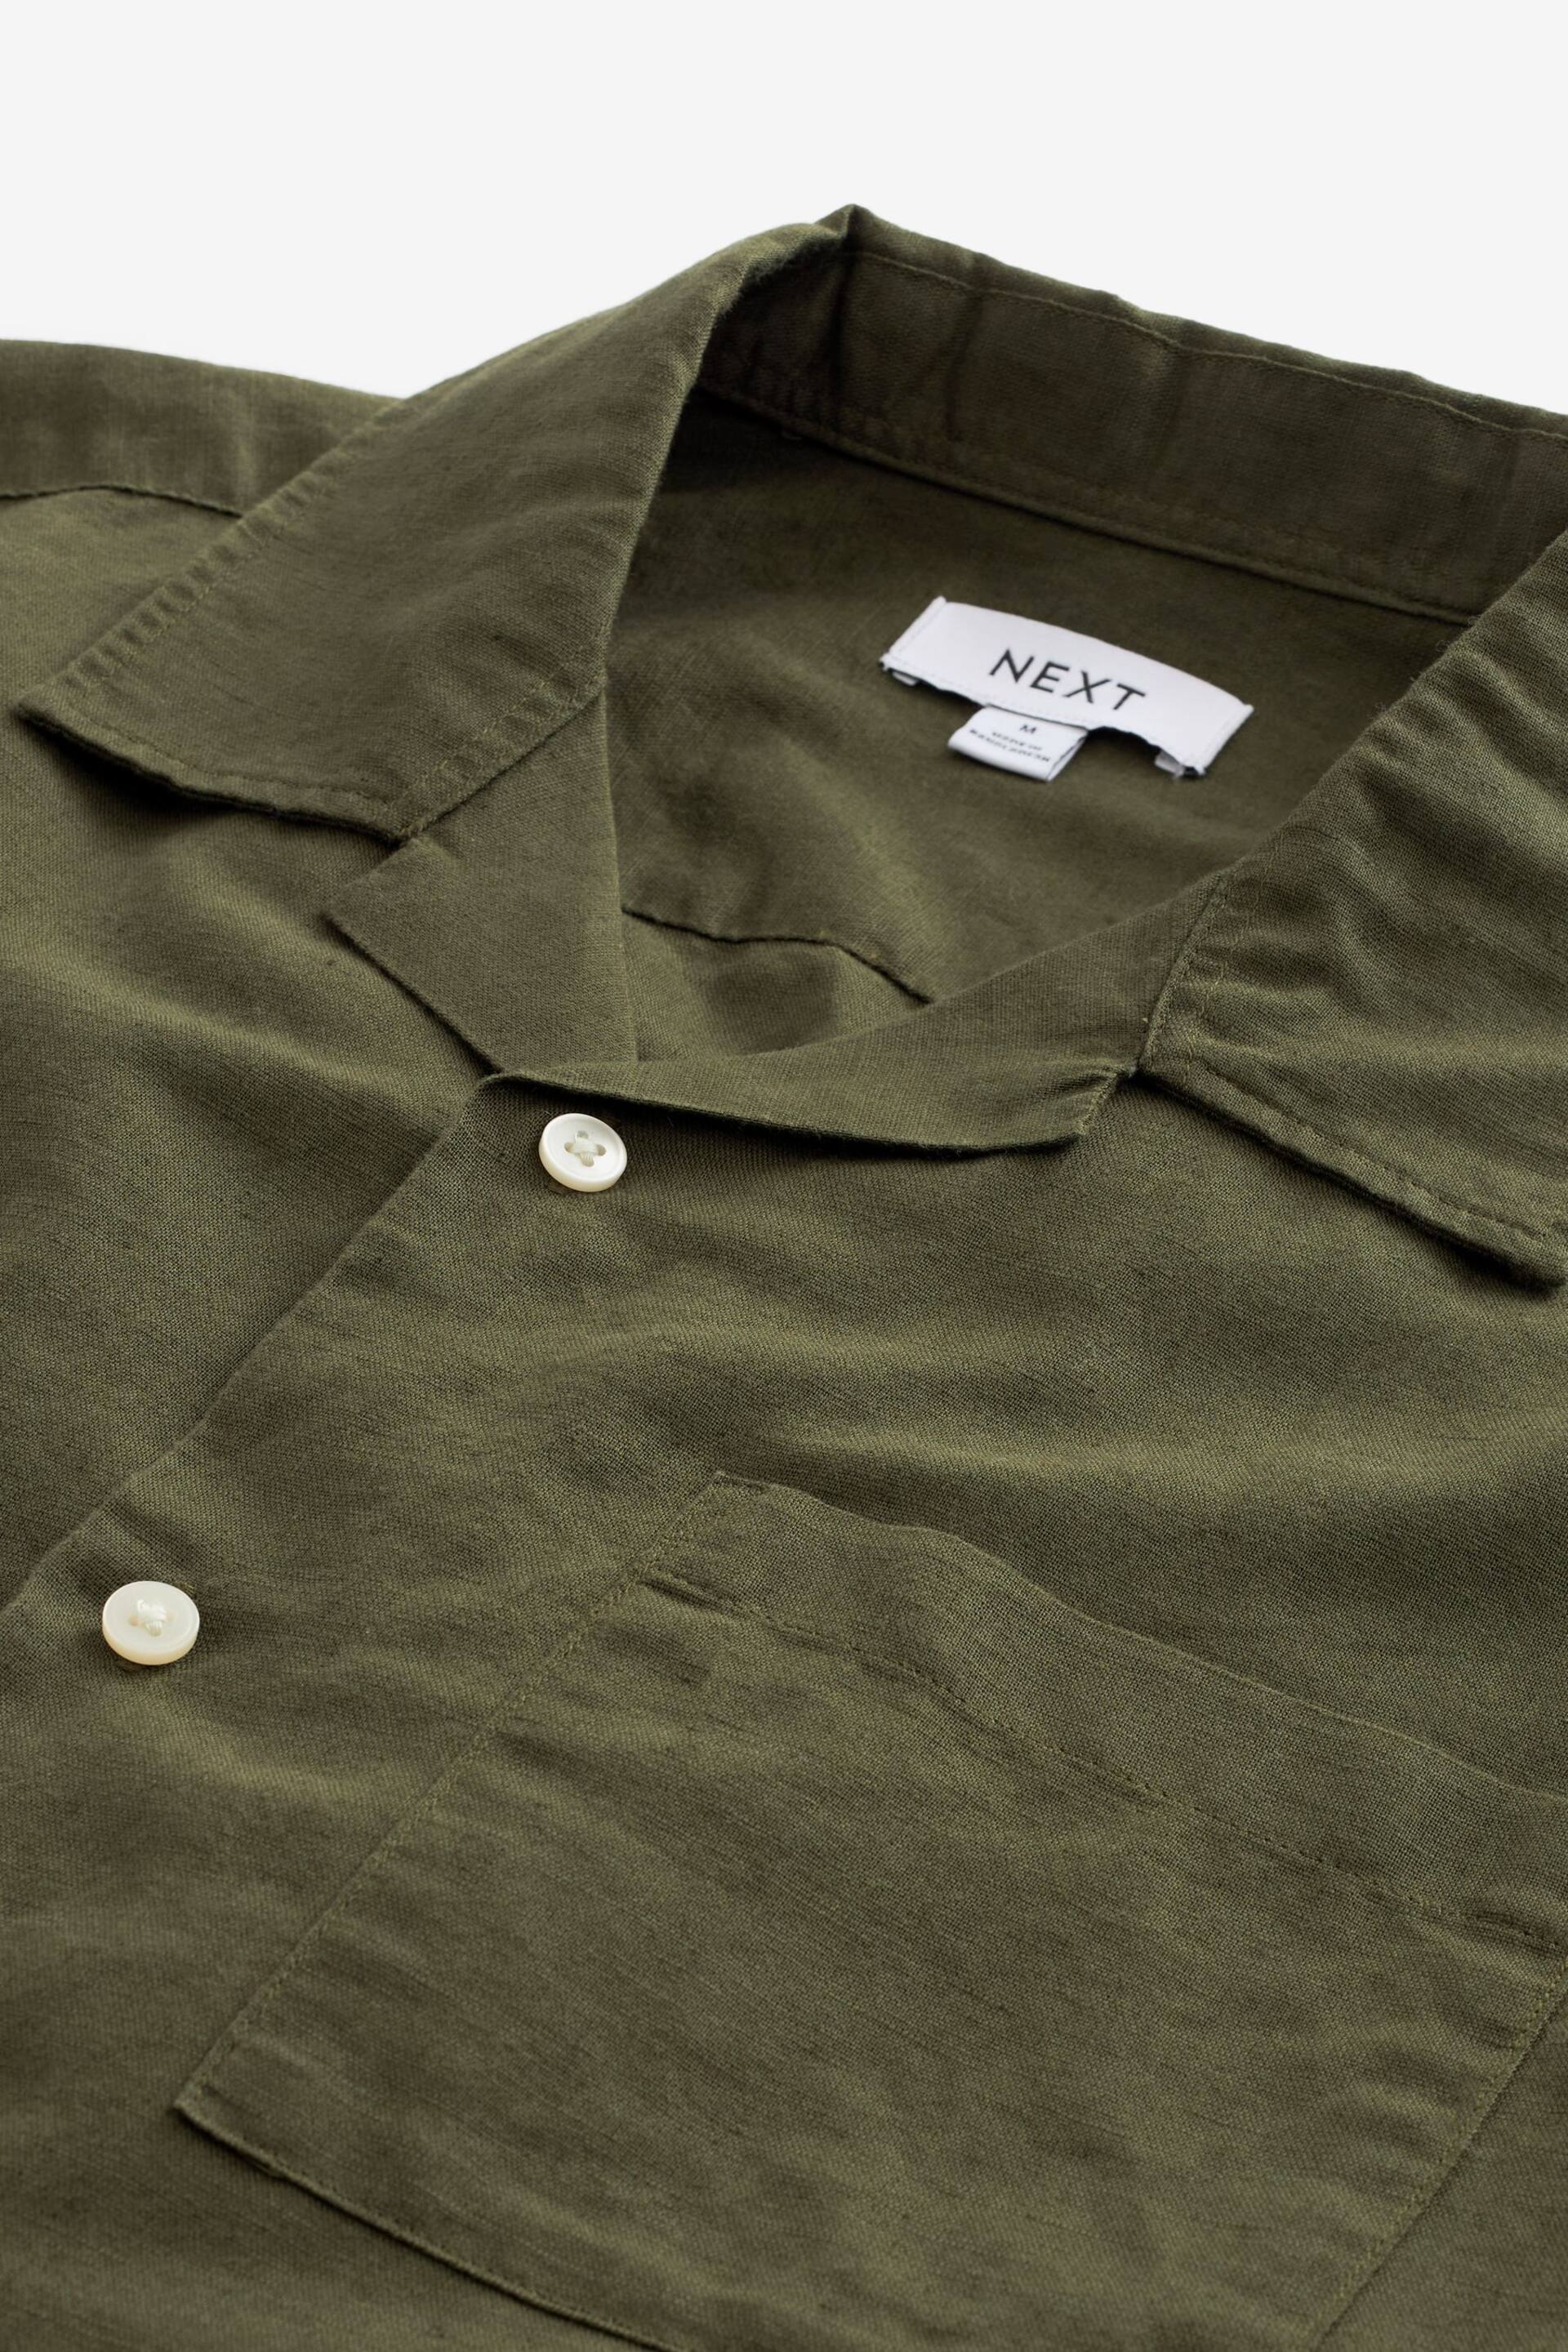 Green Cuban Collar Linen Blend Short Sleeve Shirt - Image 6 of 7